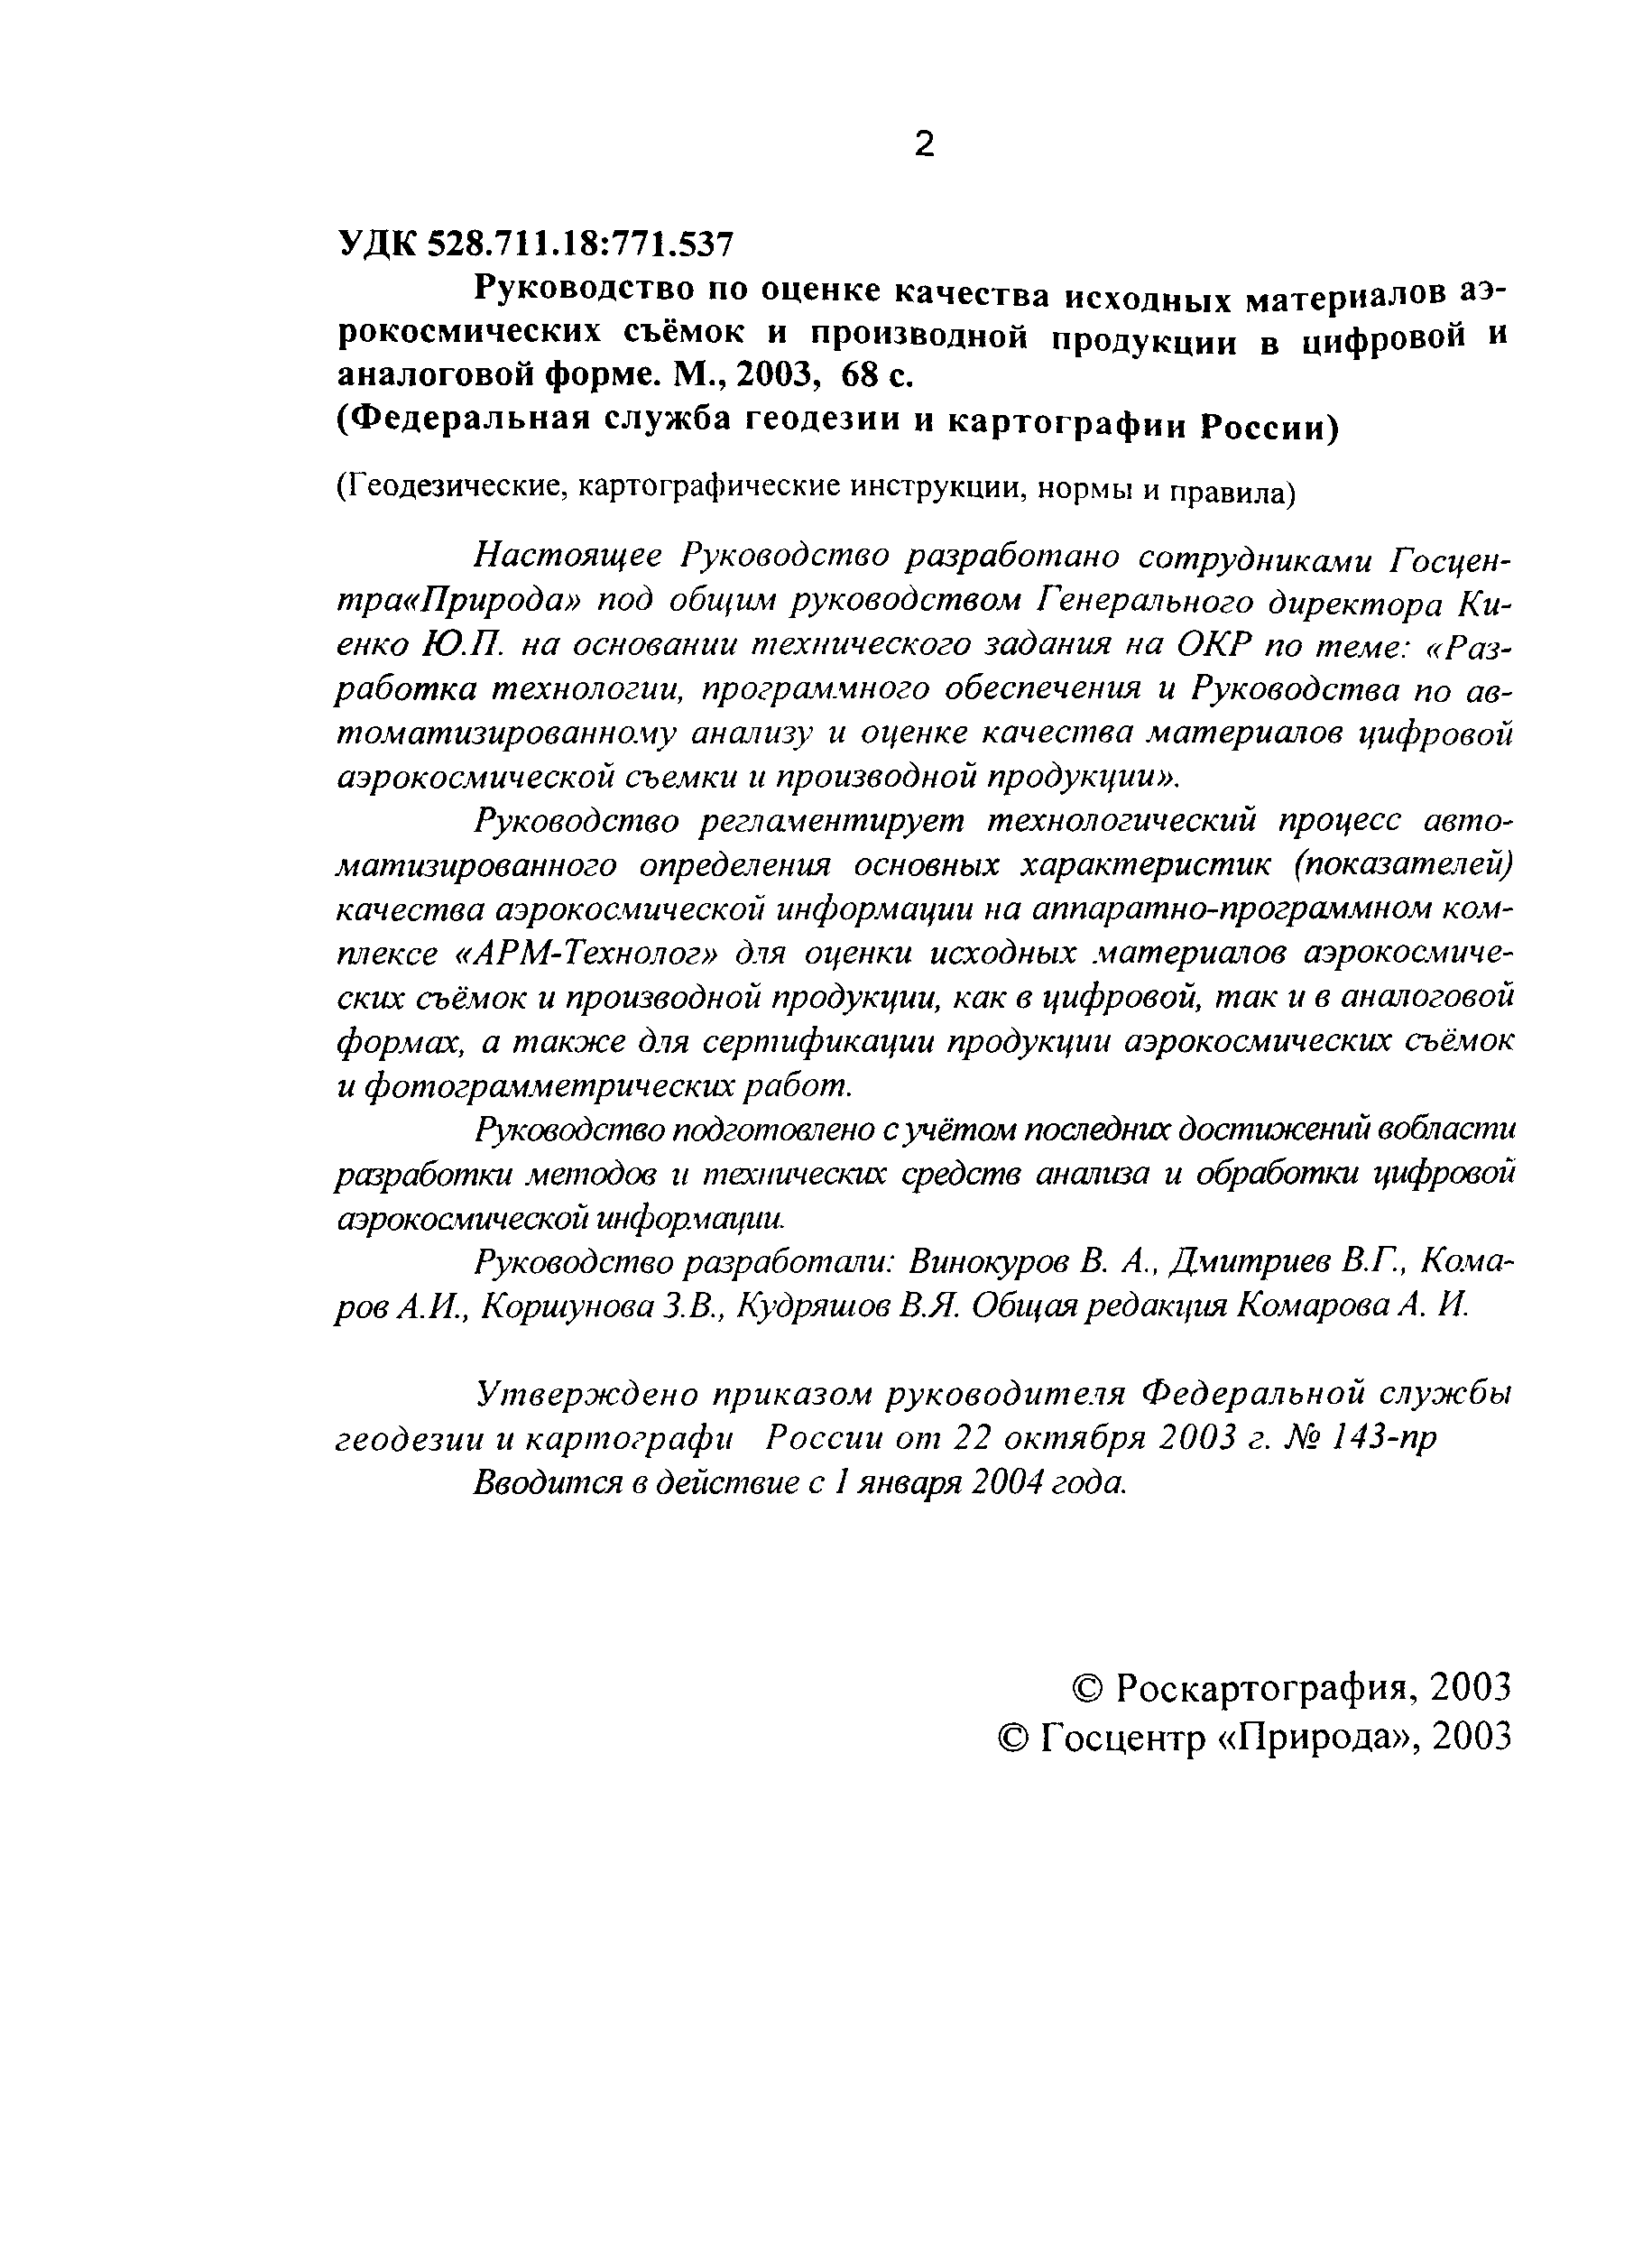 ГКИНП 12-274-03